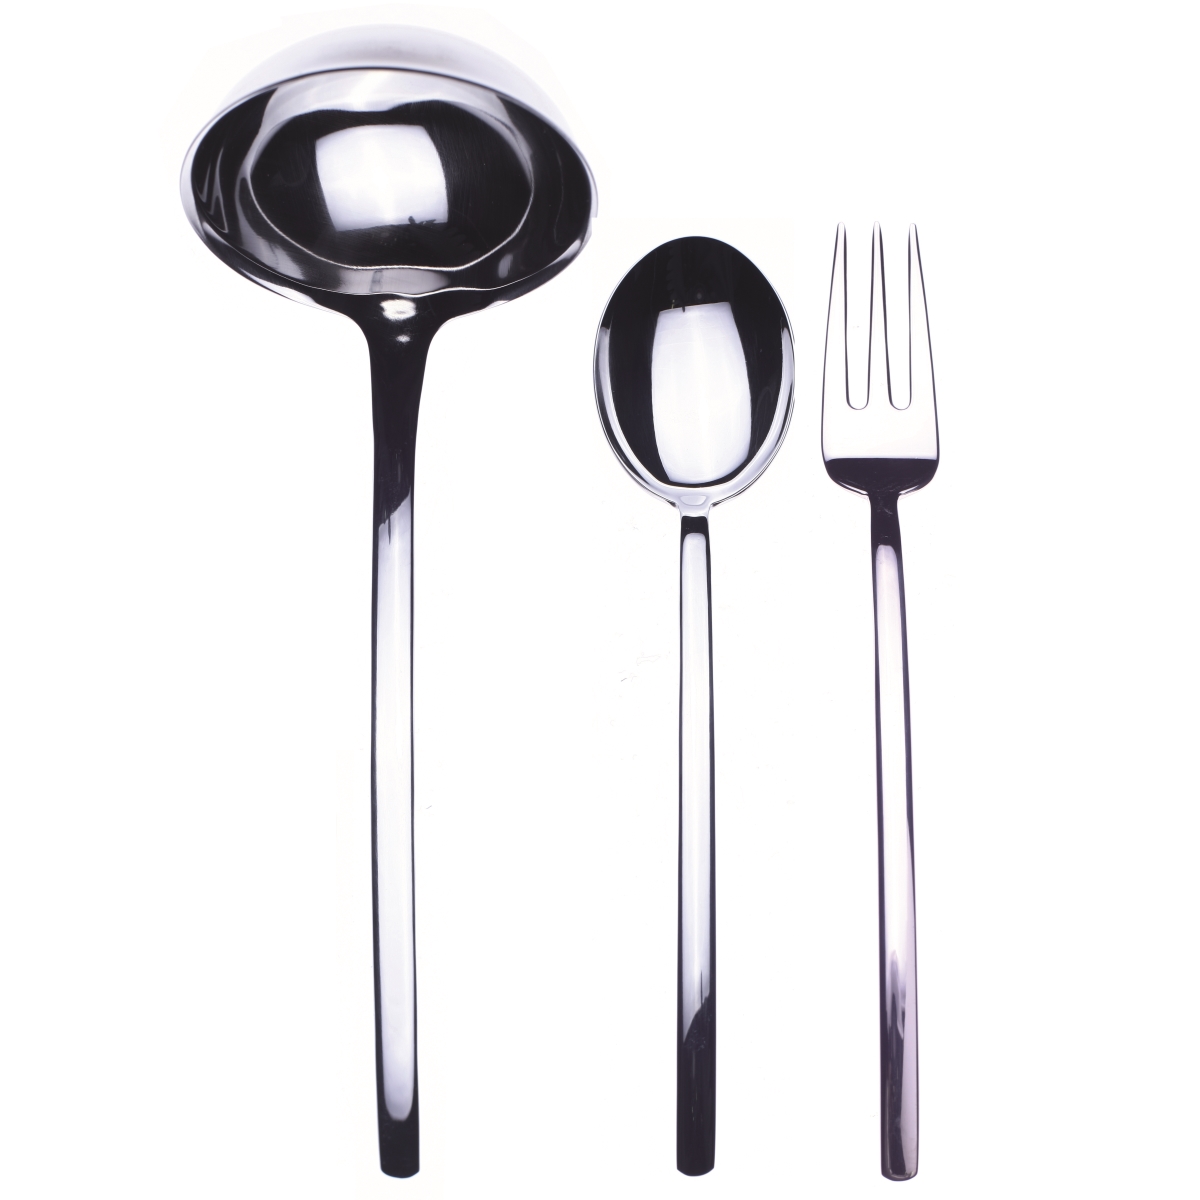 104422003 Serving Set Fork Spoon & Ladle - Due - 3 Piece